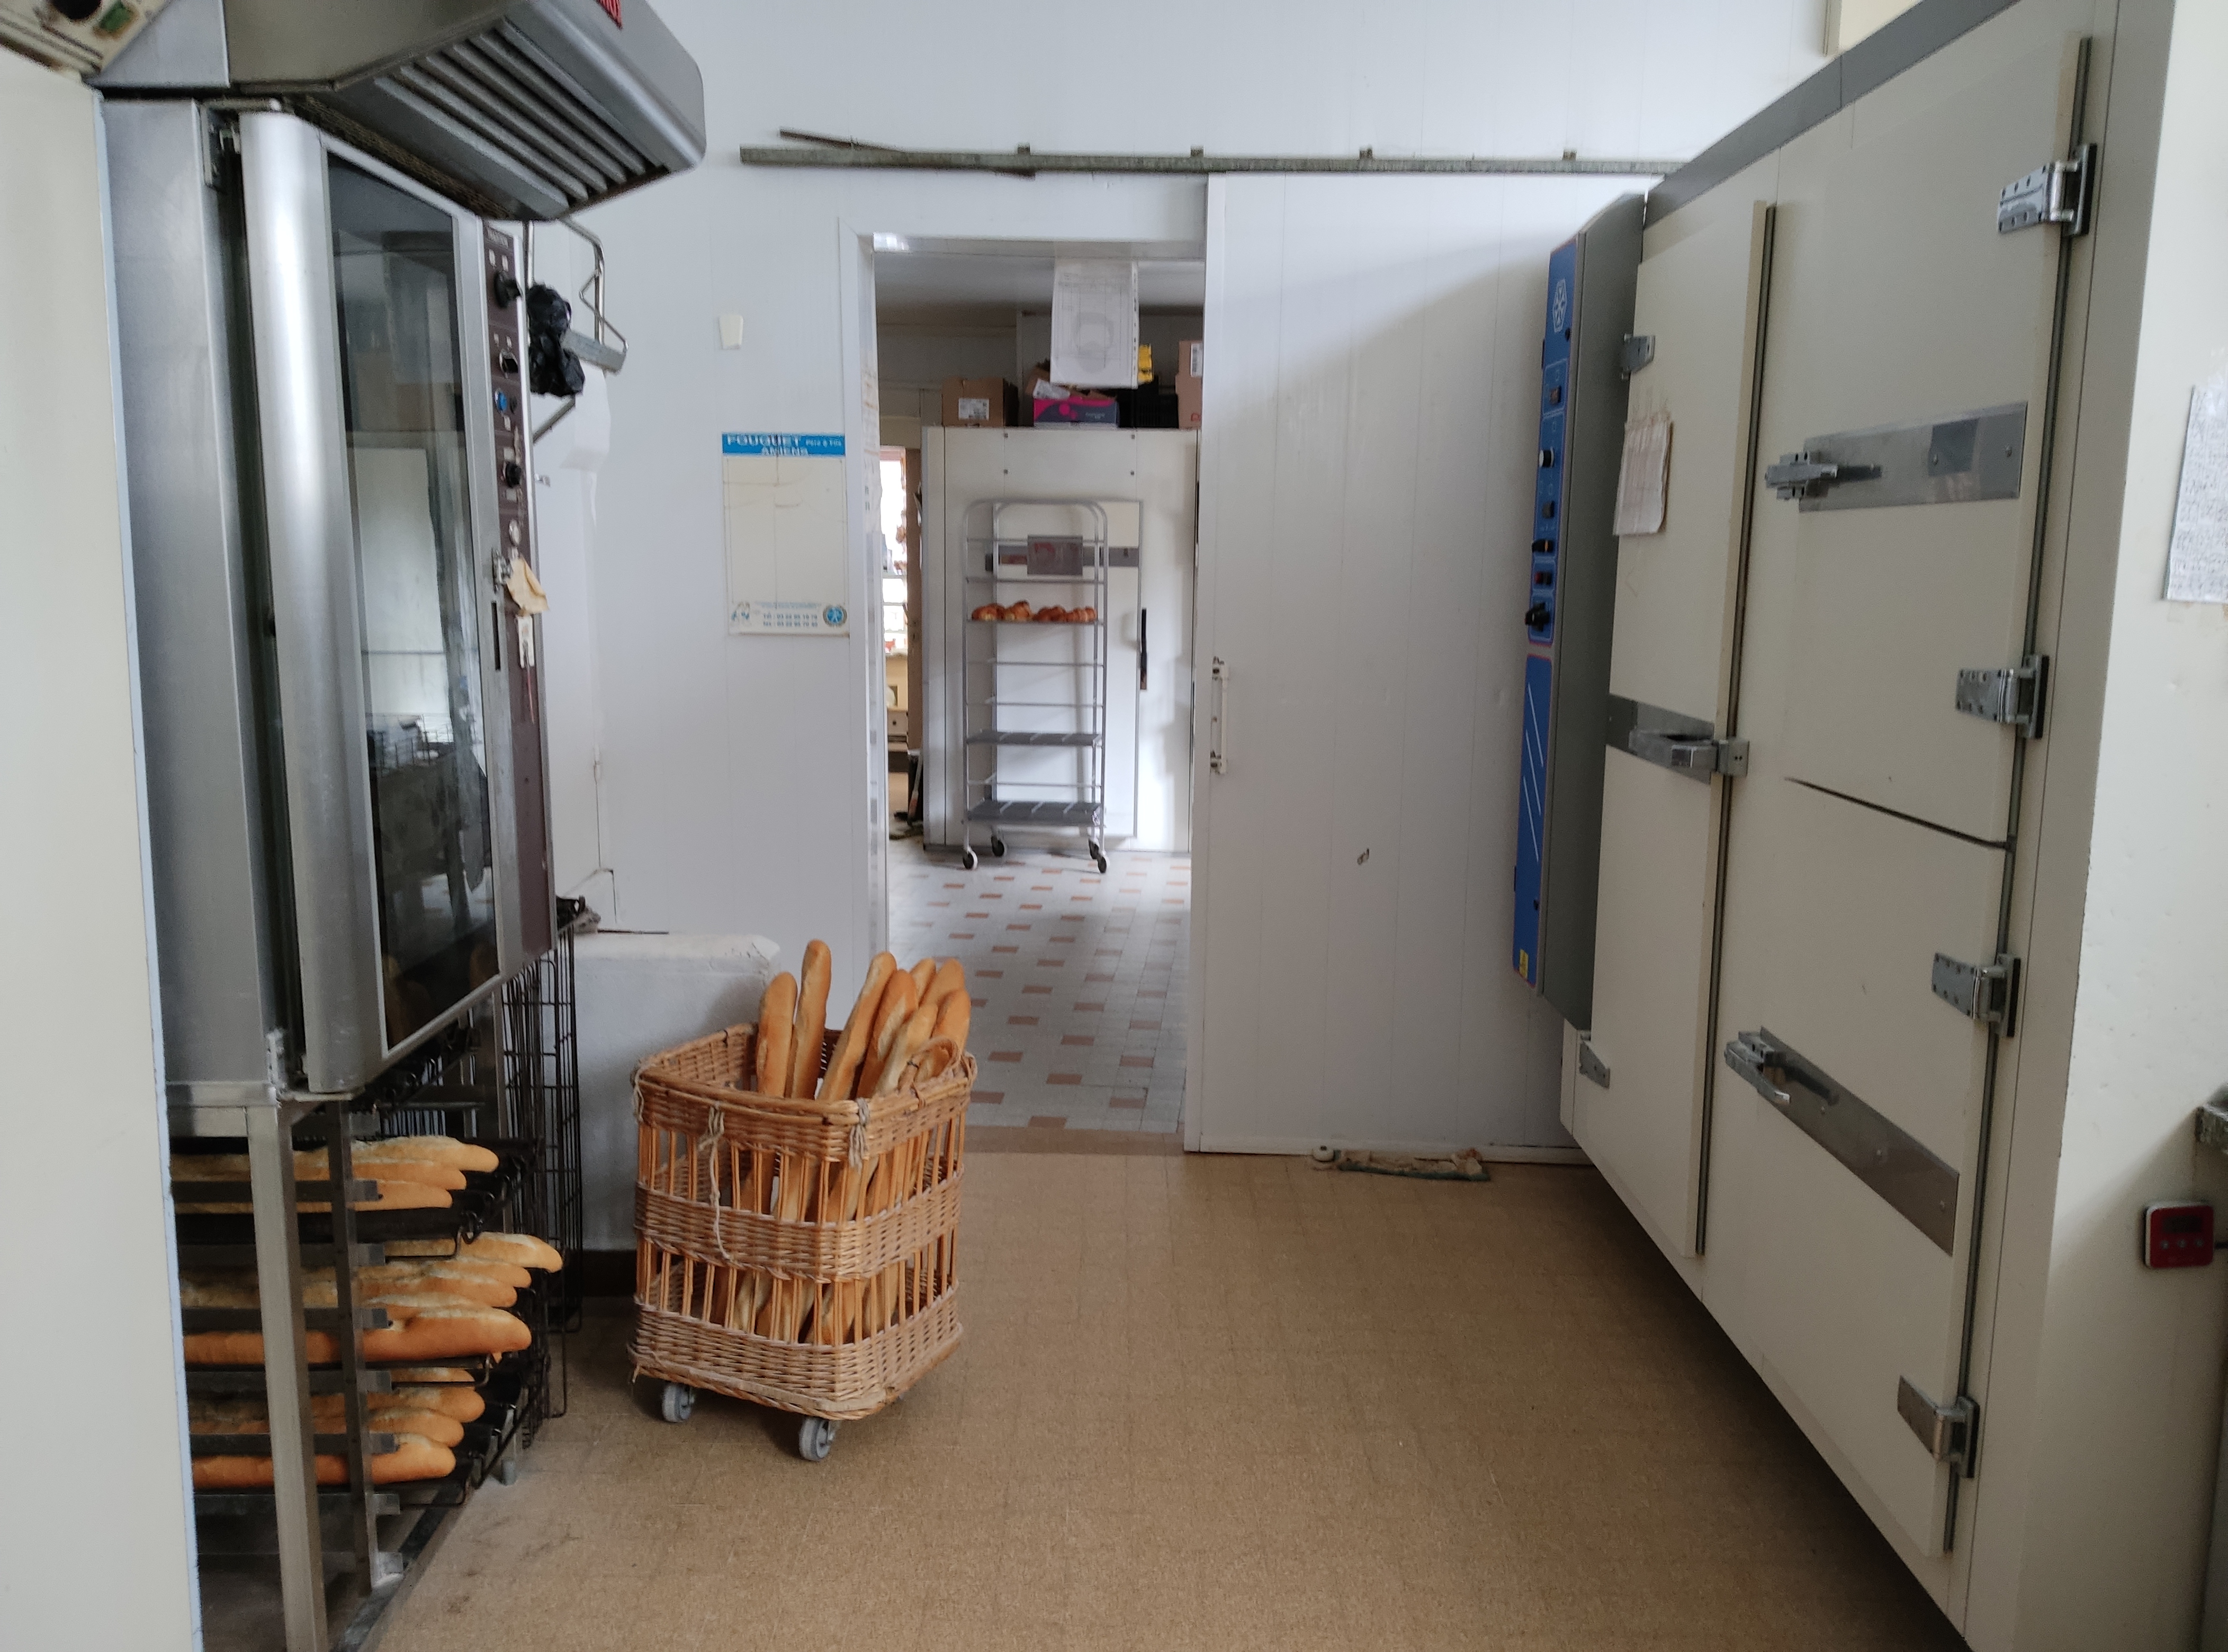 Vente boulangerie pâtisserie cause  retraite
Surface 300m2 Loc appartement 800€
1boulanger et 3 vendeuses